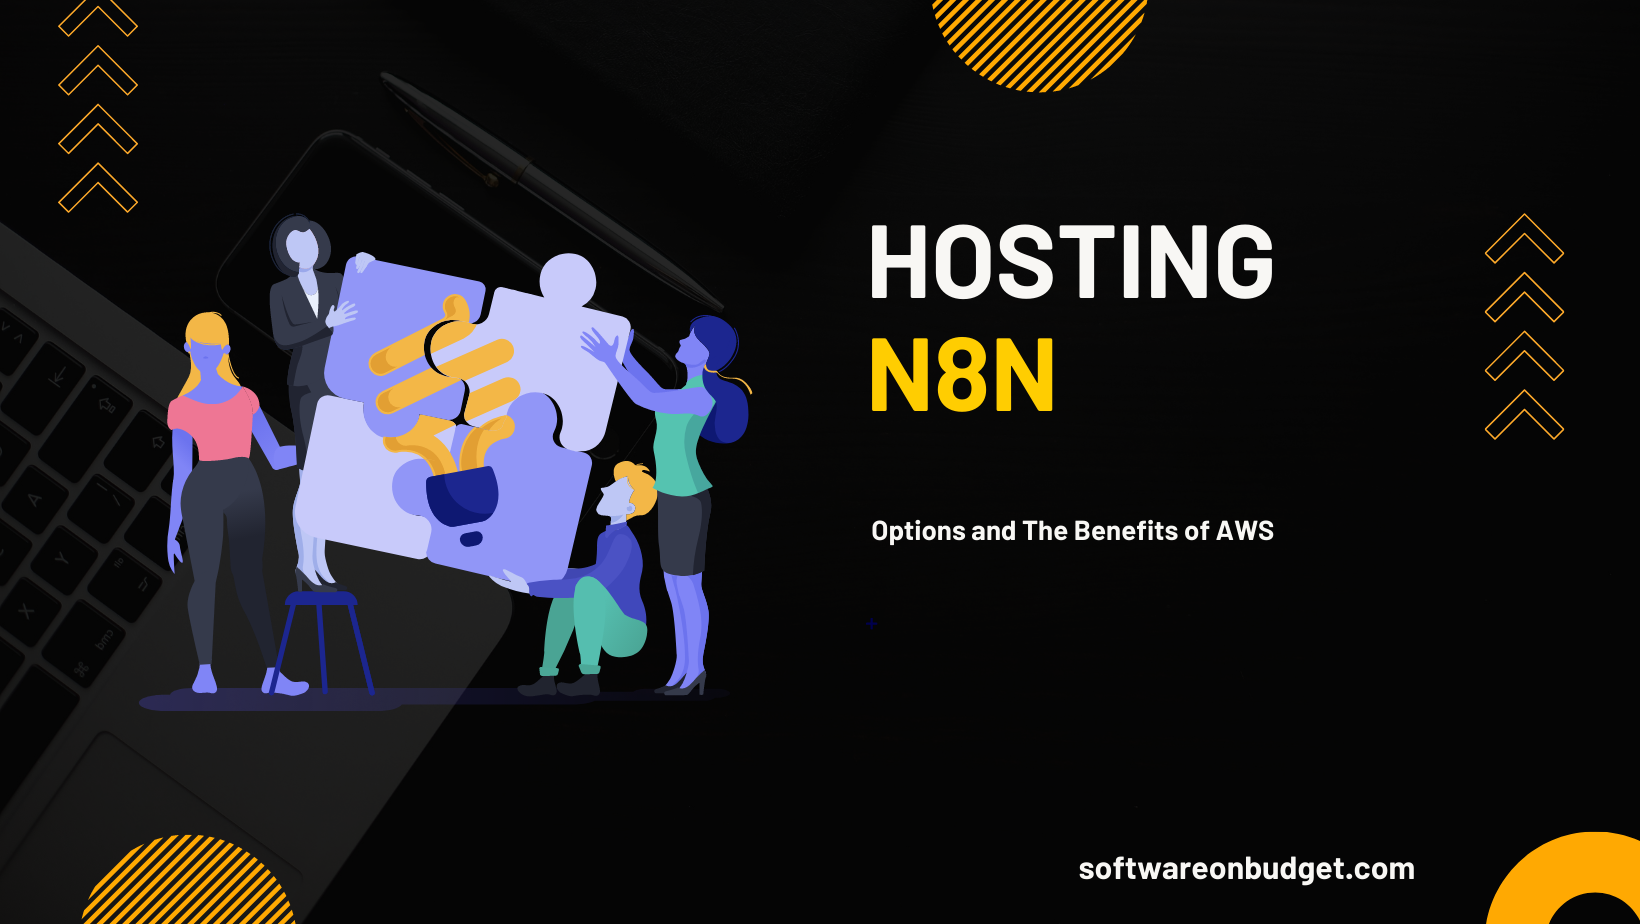 n8n hosting options